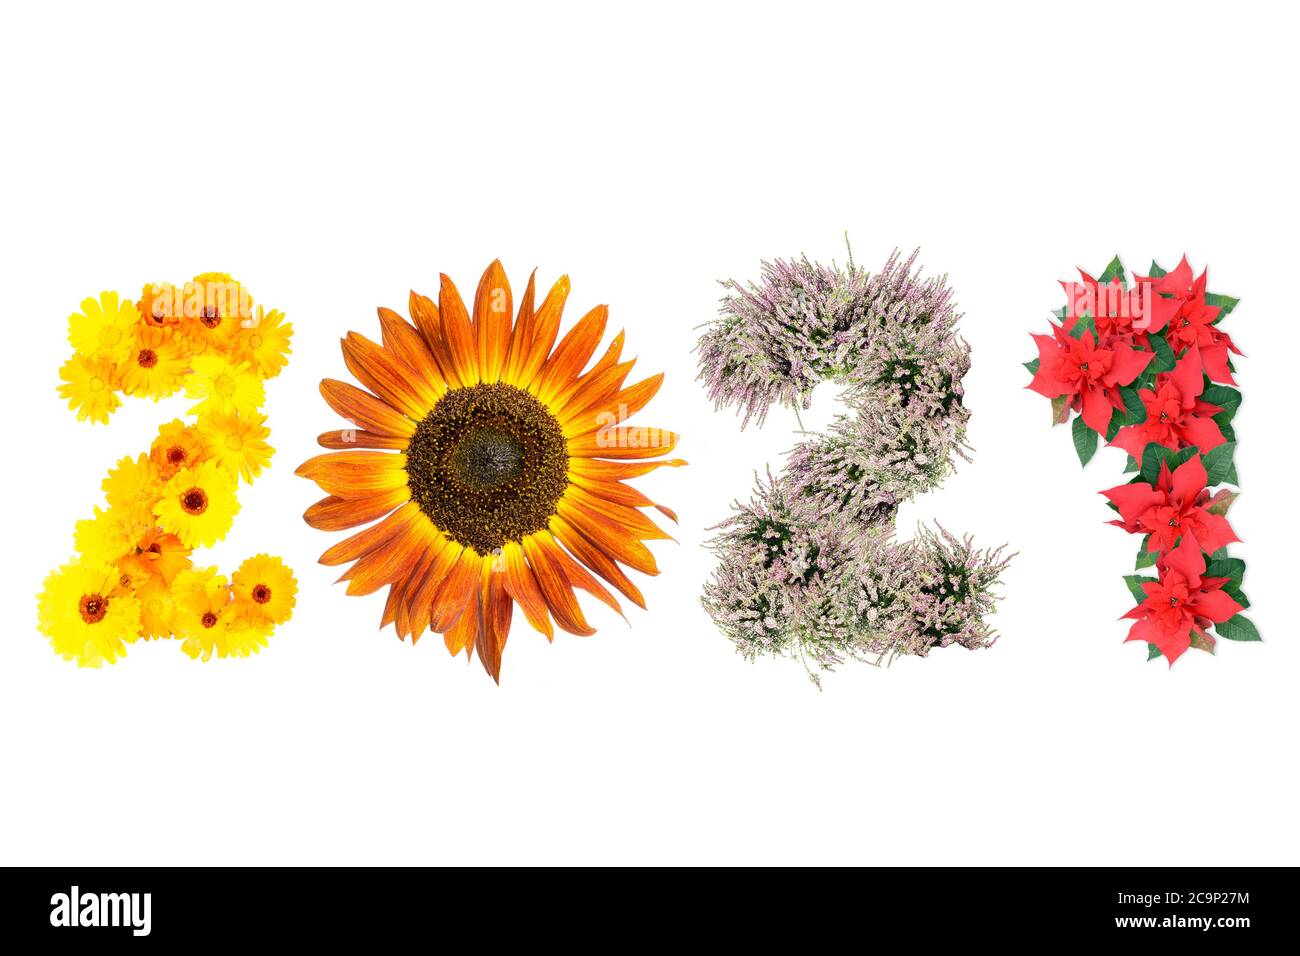 Nouvelle année 2021 date arrangé à partir de fleurs de marigold, de tournesol, de bruyère et de poinsettia représentant quatre saisons de l'année Banque D'Images